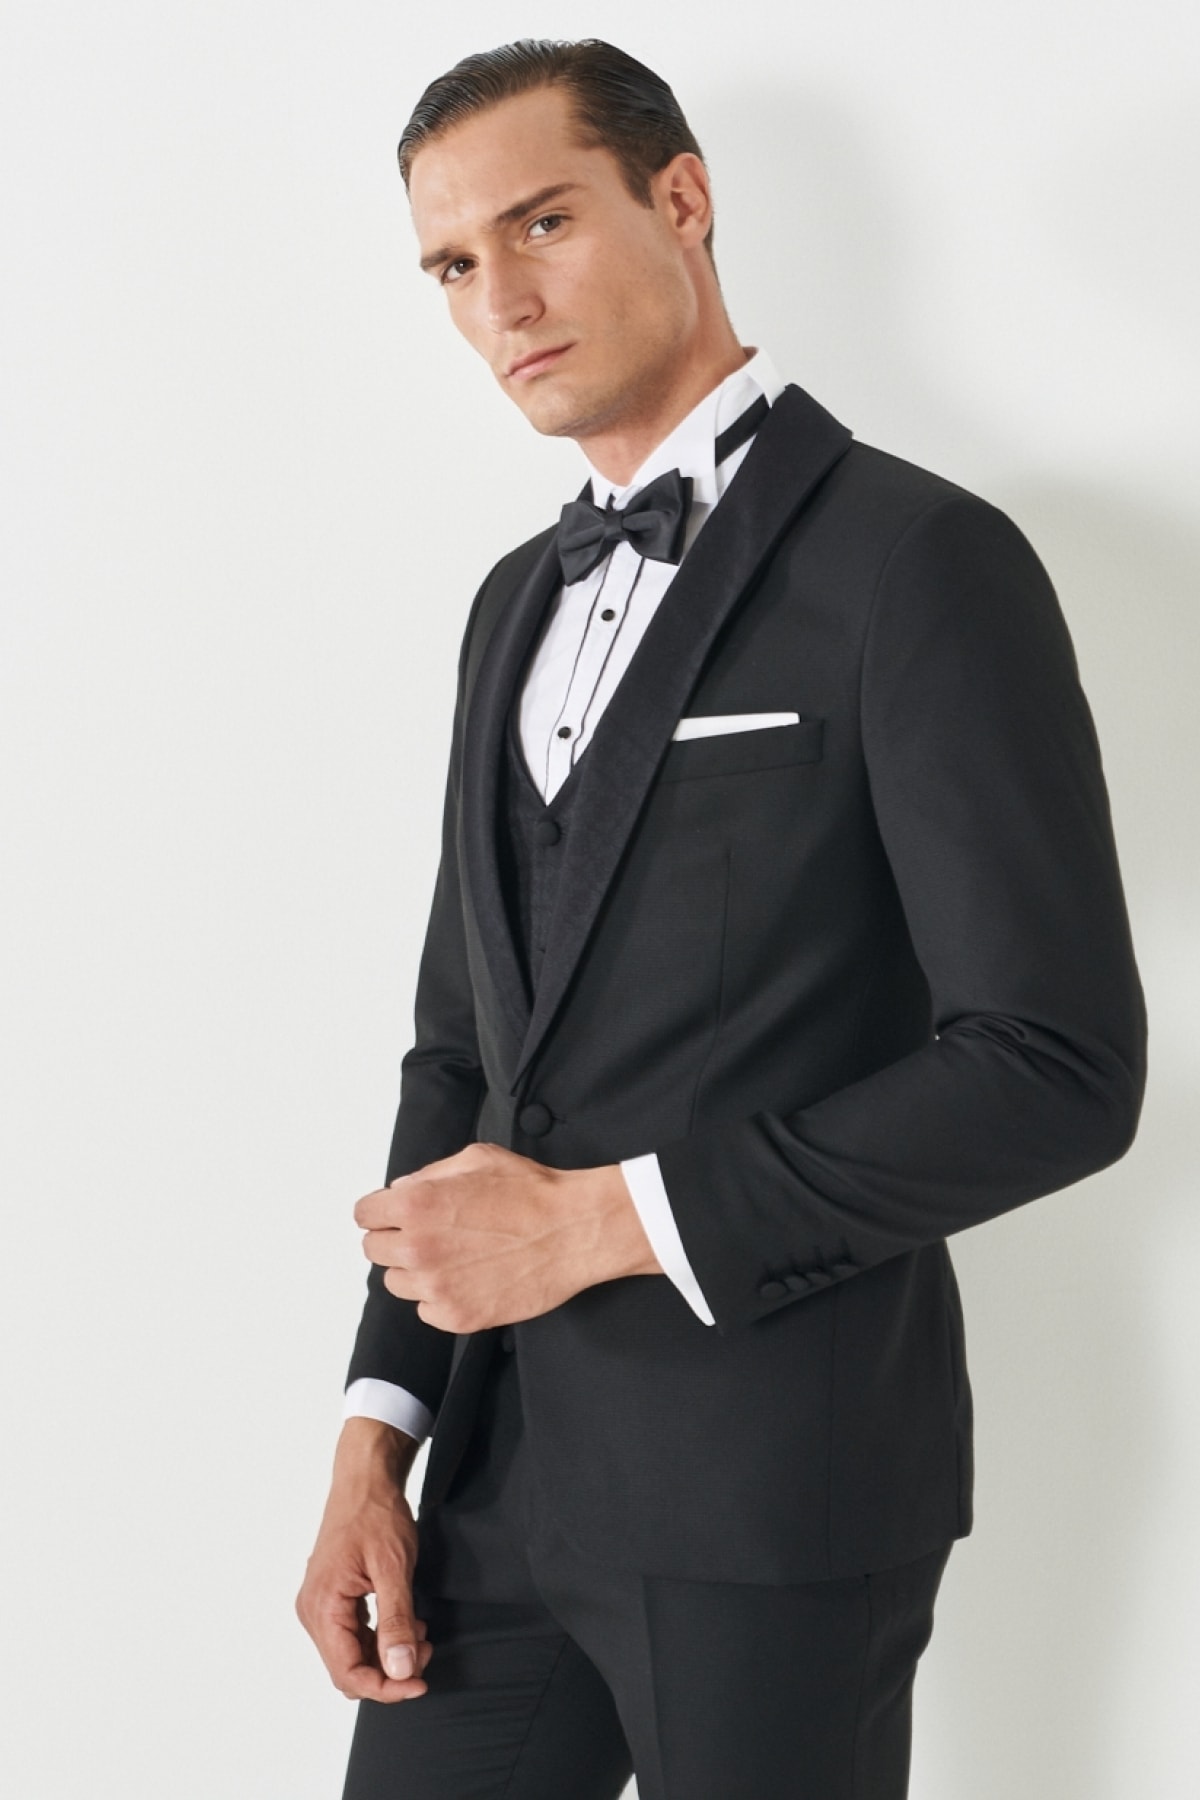 Levně ALTINYILDIZ CLASSICS Men's Black Extra Slim Fit Slim Fit Dovetail Collar Patterned Vest Tuxedo Suit.